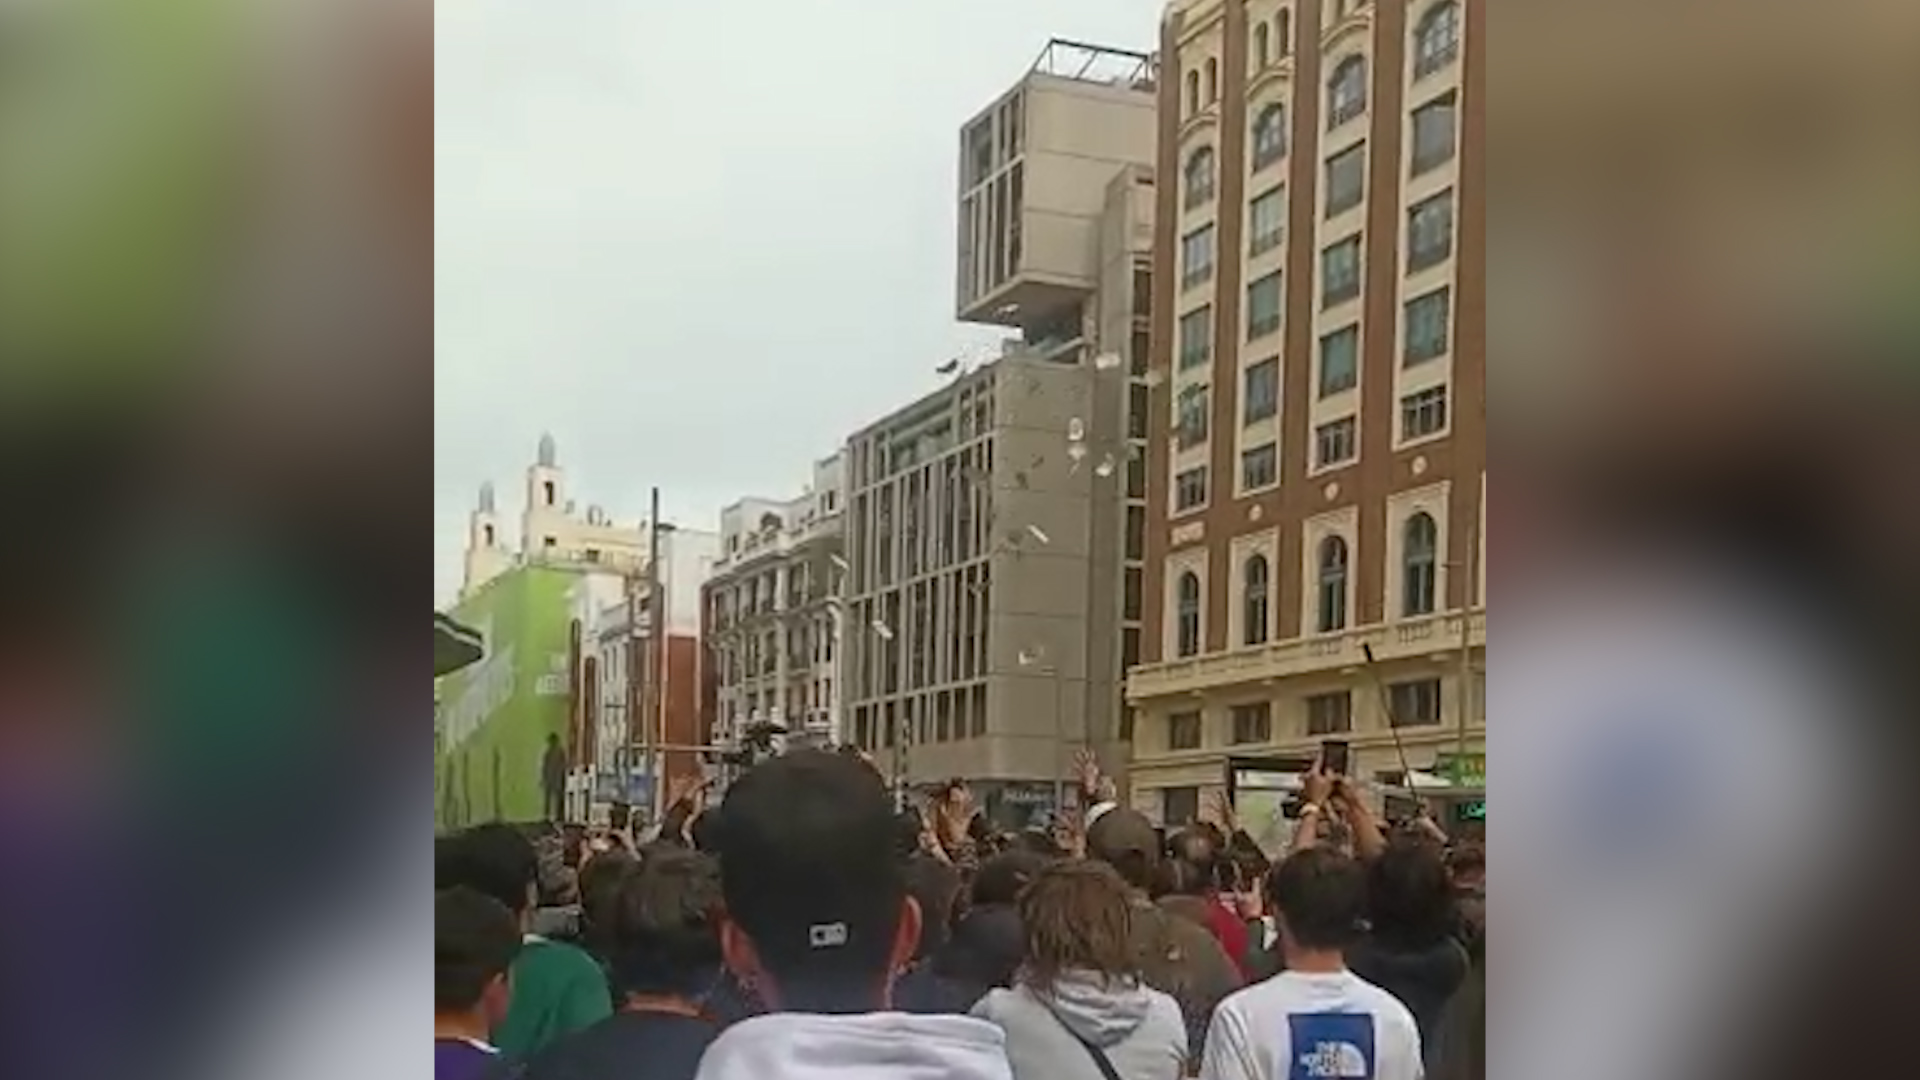 Yung Beef revoluciona el centro de Madrid al lanzar 5.000 euros en billetes al aire